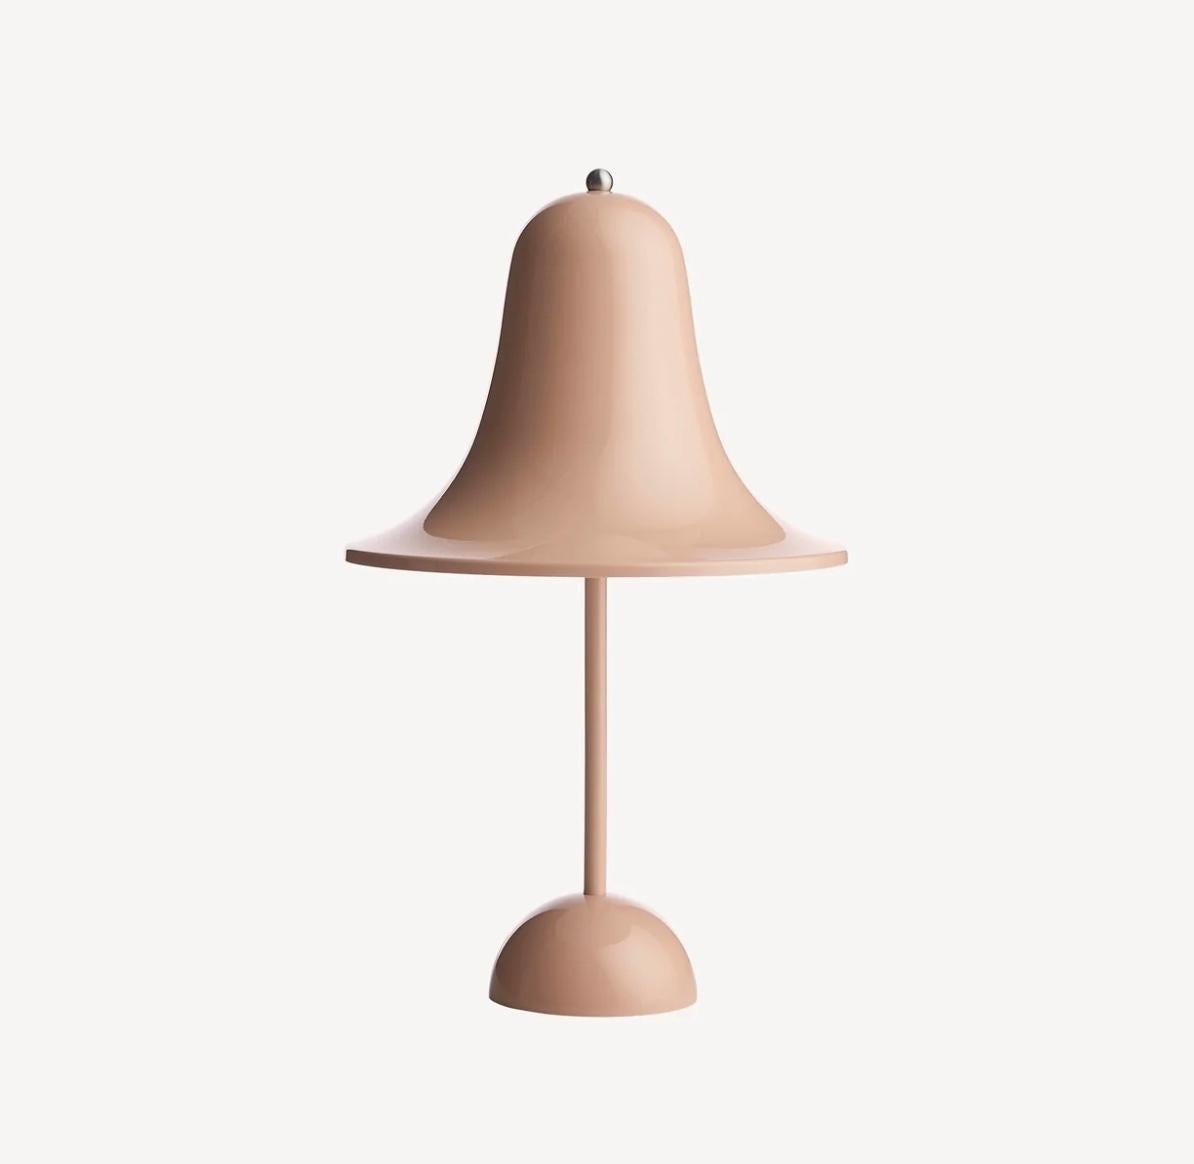 Danish Verner Panton 'Pantop Portable' Wireless Table Lamp in 'Terracotta' for Verpan For Sale